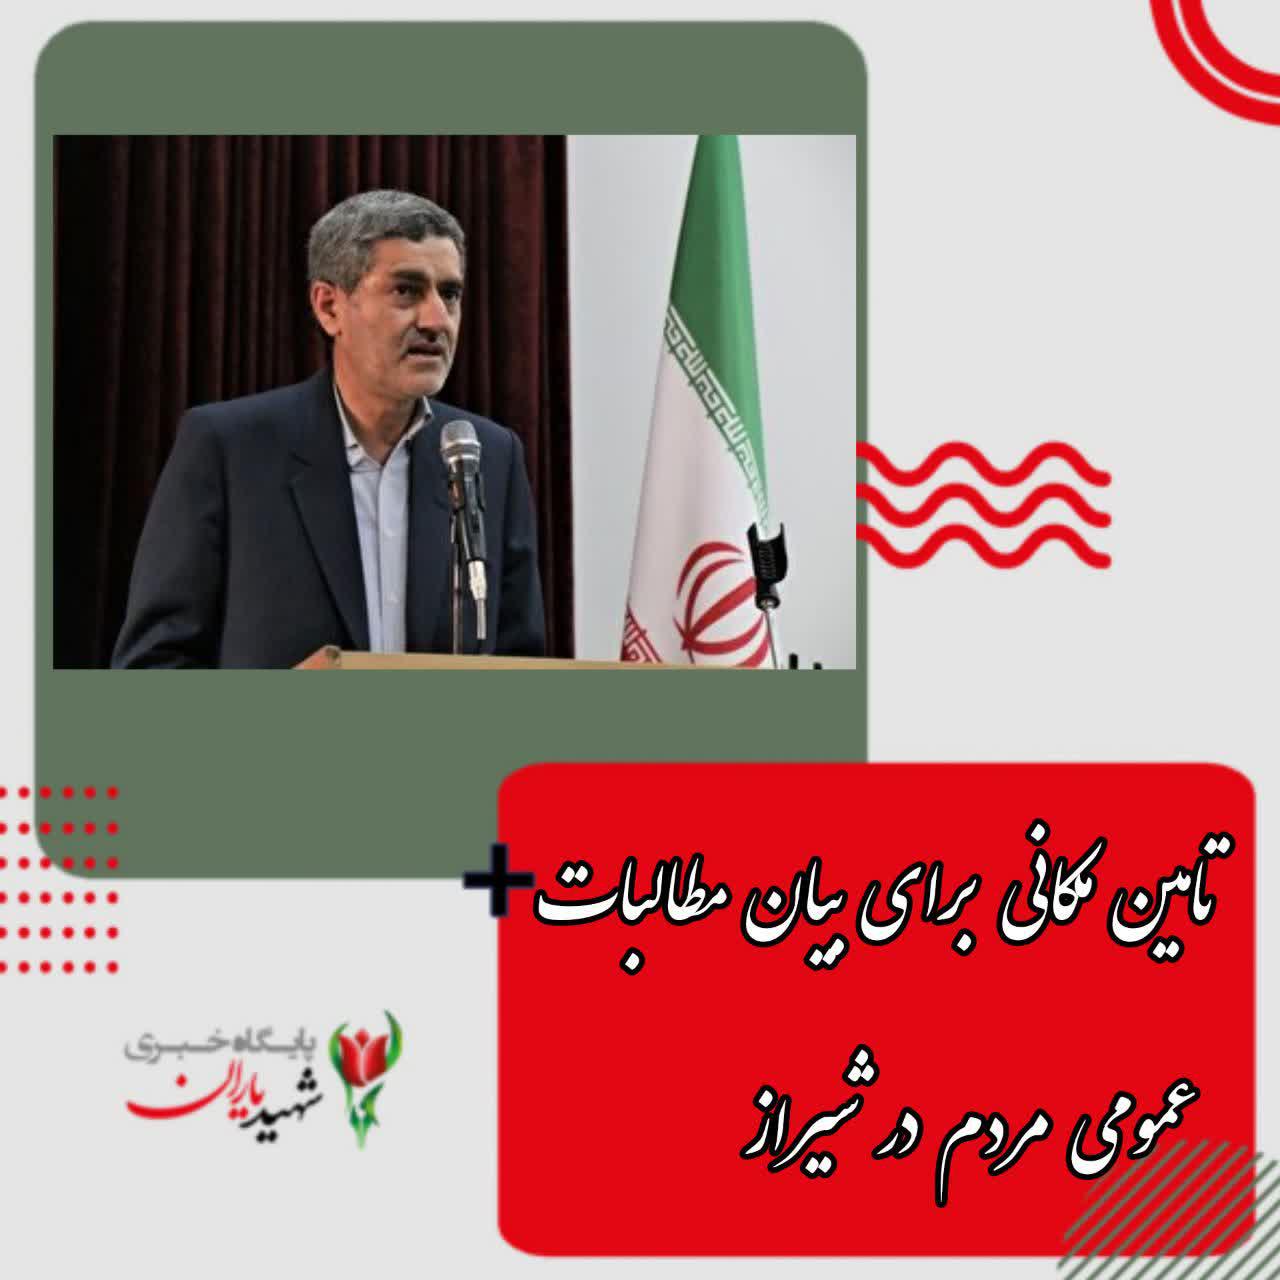 تامین مکانی برای بیان مطالبات عمومی مردم در شیراز